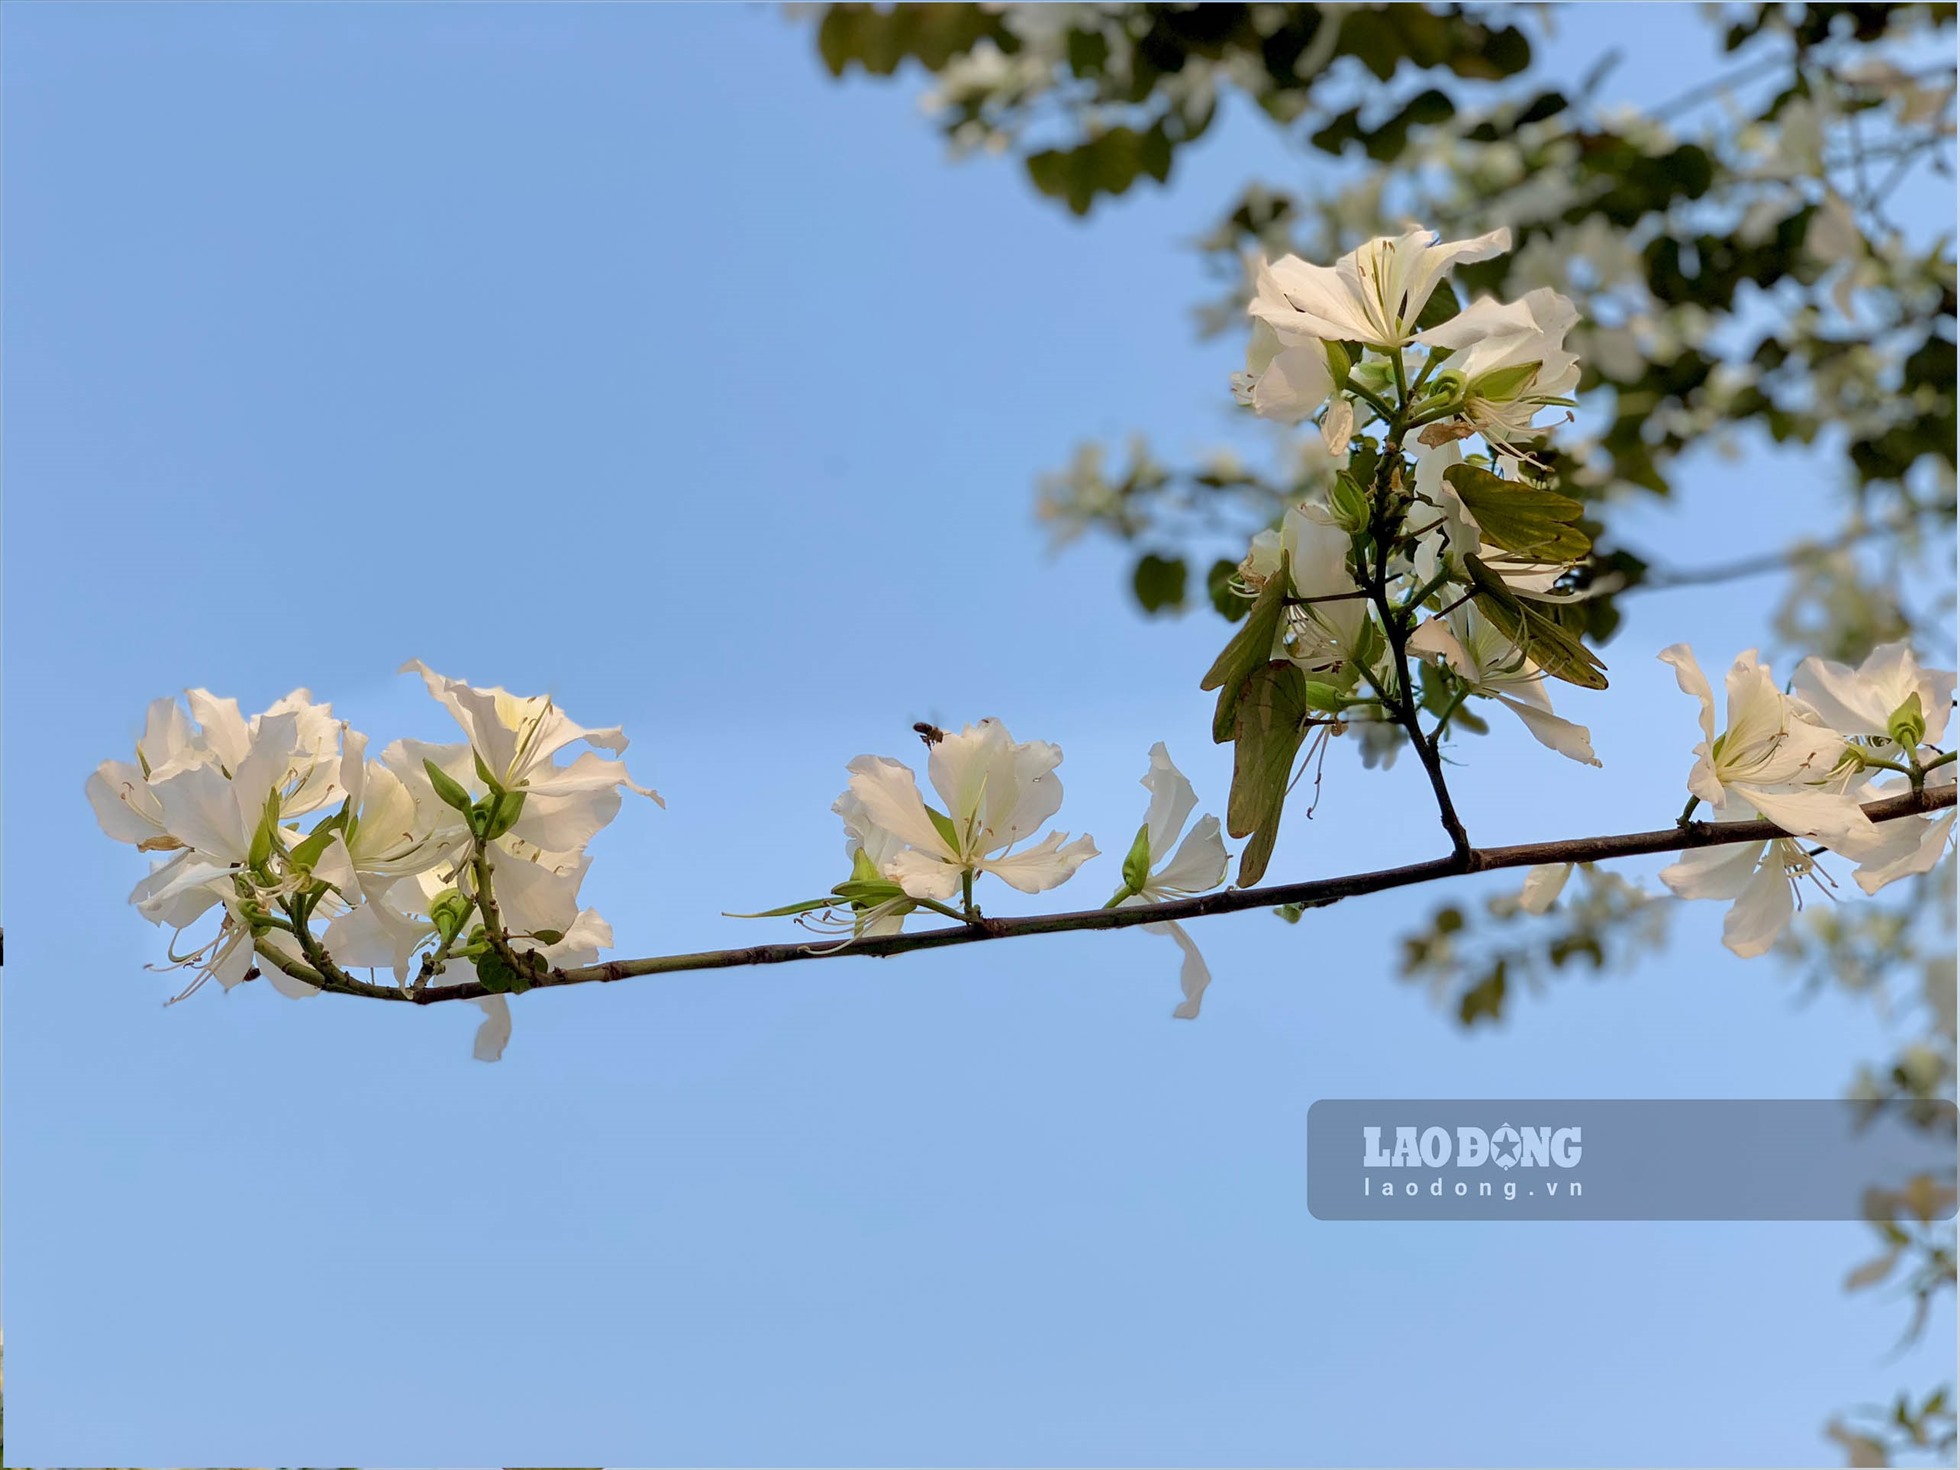 Hoa ban sở hữu vẻ đẹp mỏng manh, tinh khôi, với 4 - 5 cánh mềm mại và nở kéo dài từ 2 - 3 tháng với nhiều màu, đặc trưng nhất là trắng, hồng và tím.